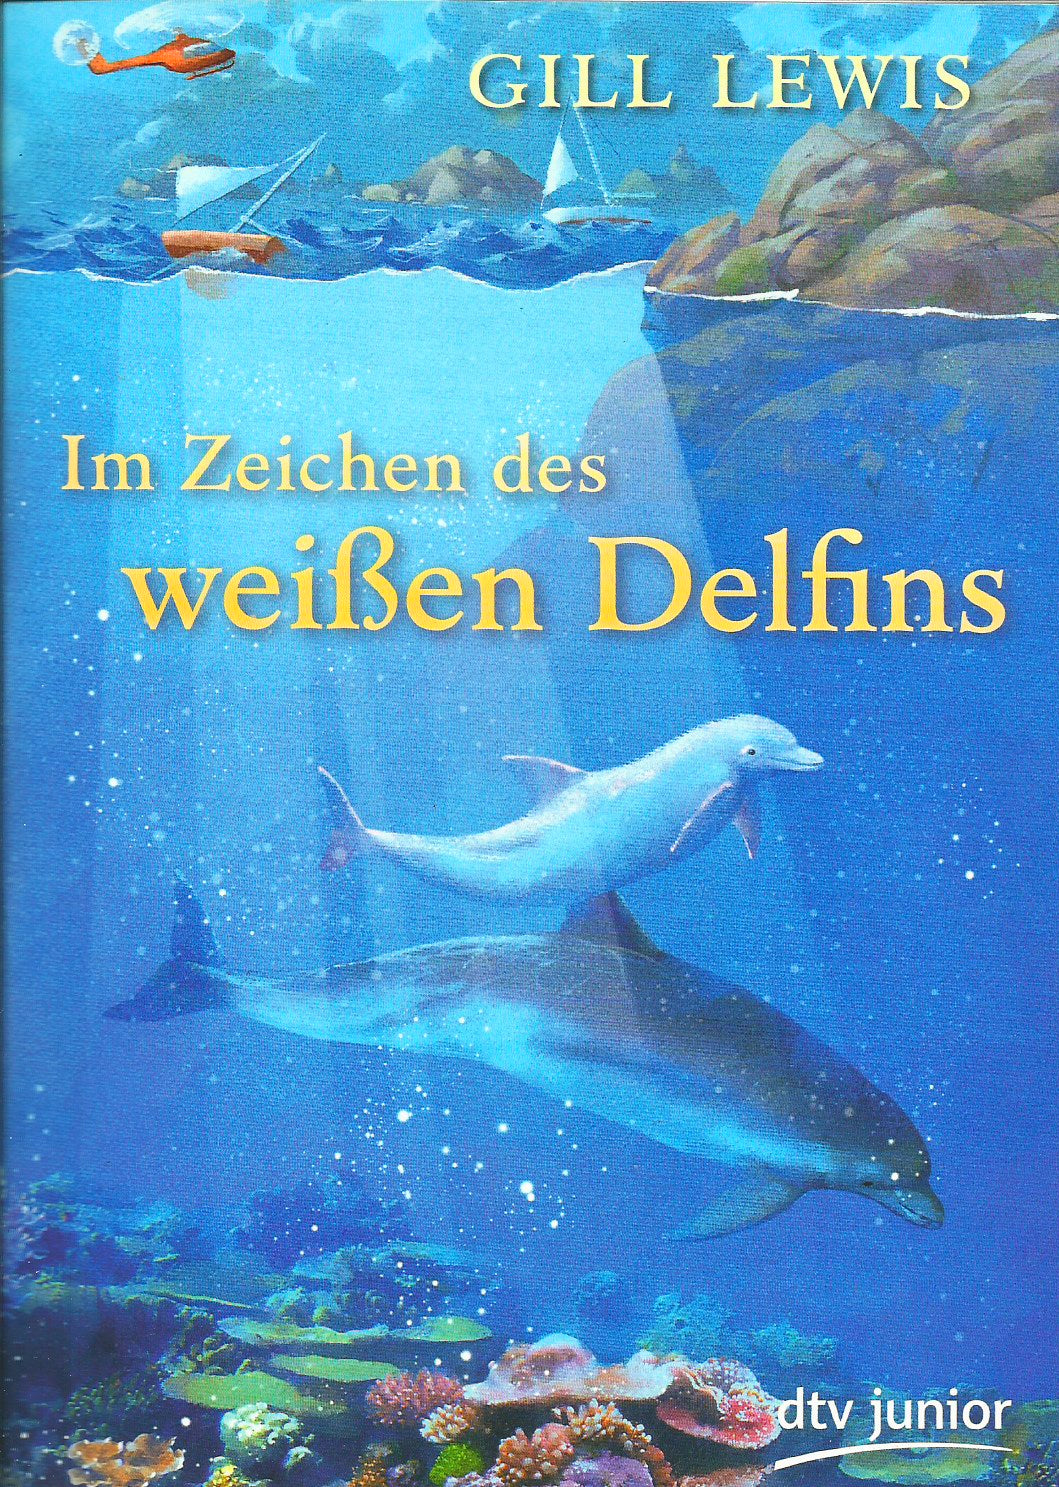 Weisser-Delfin.jpg